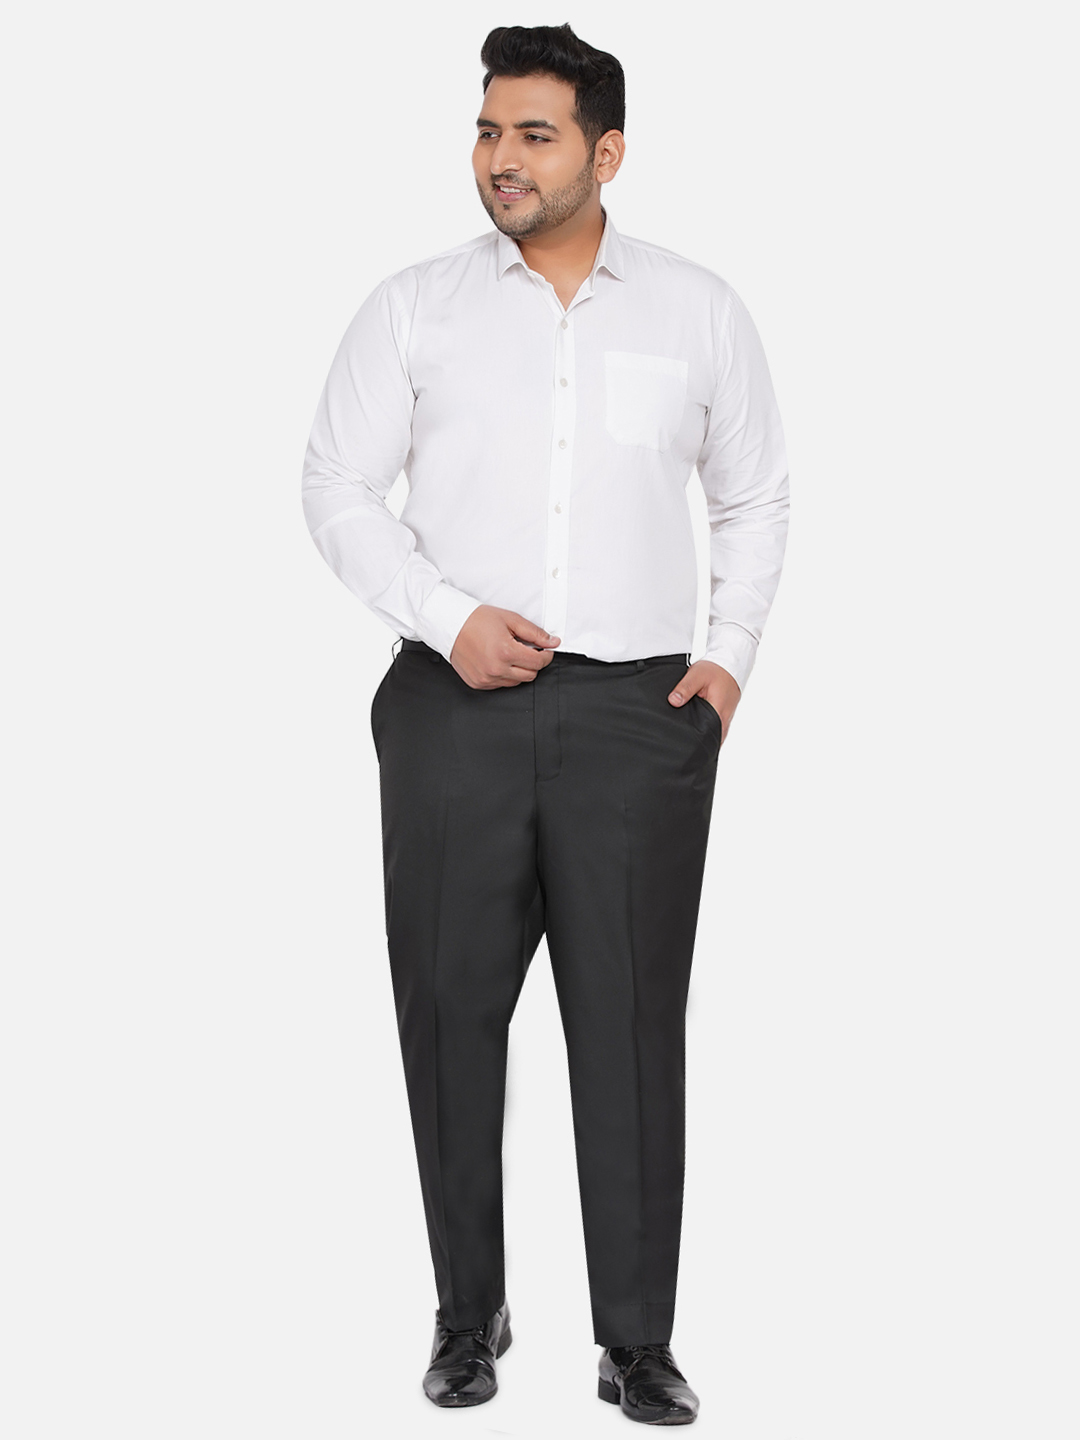 bottomwear/trousers/JPTR22010A/jptr22010a-6.jpg